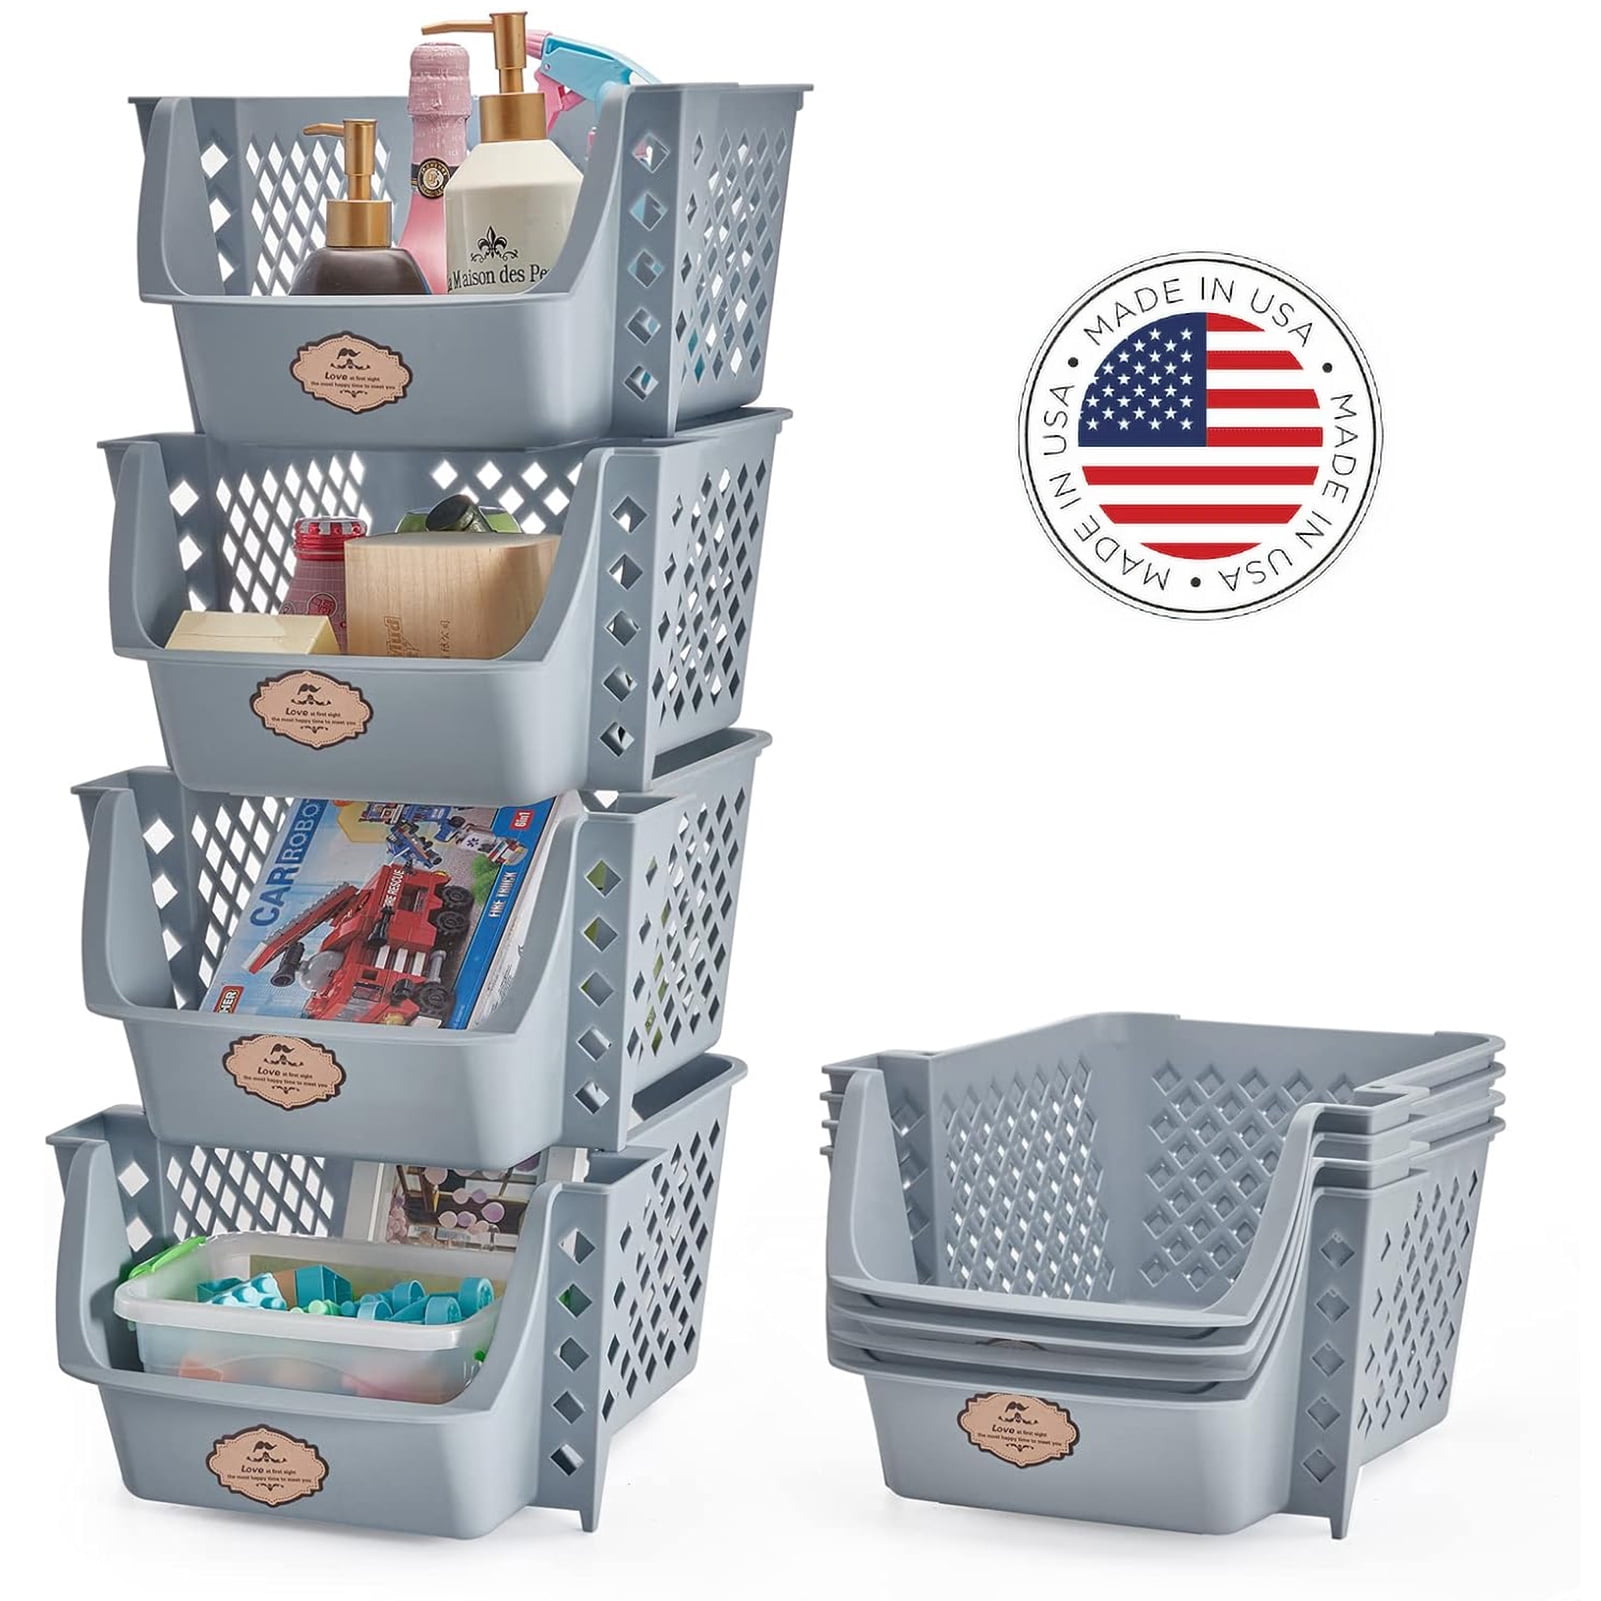  Baskets & Bins: Home & Kitchen: Storage Baskets, Open Storage  Bins, Lidded Storage Bins & More